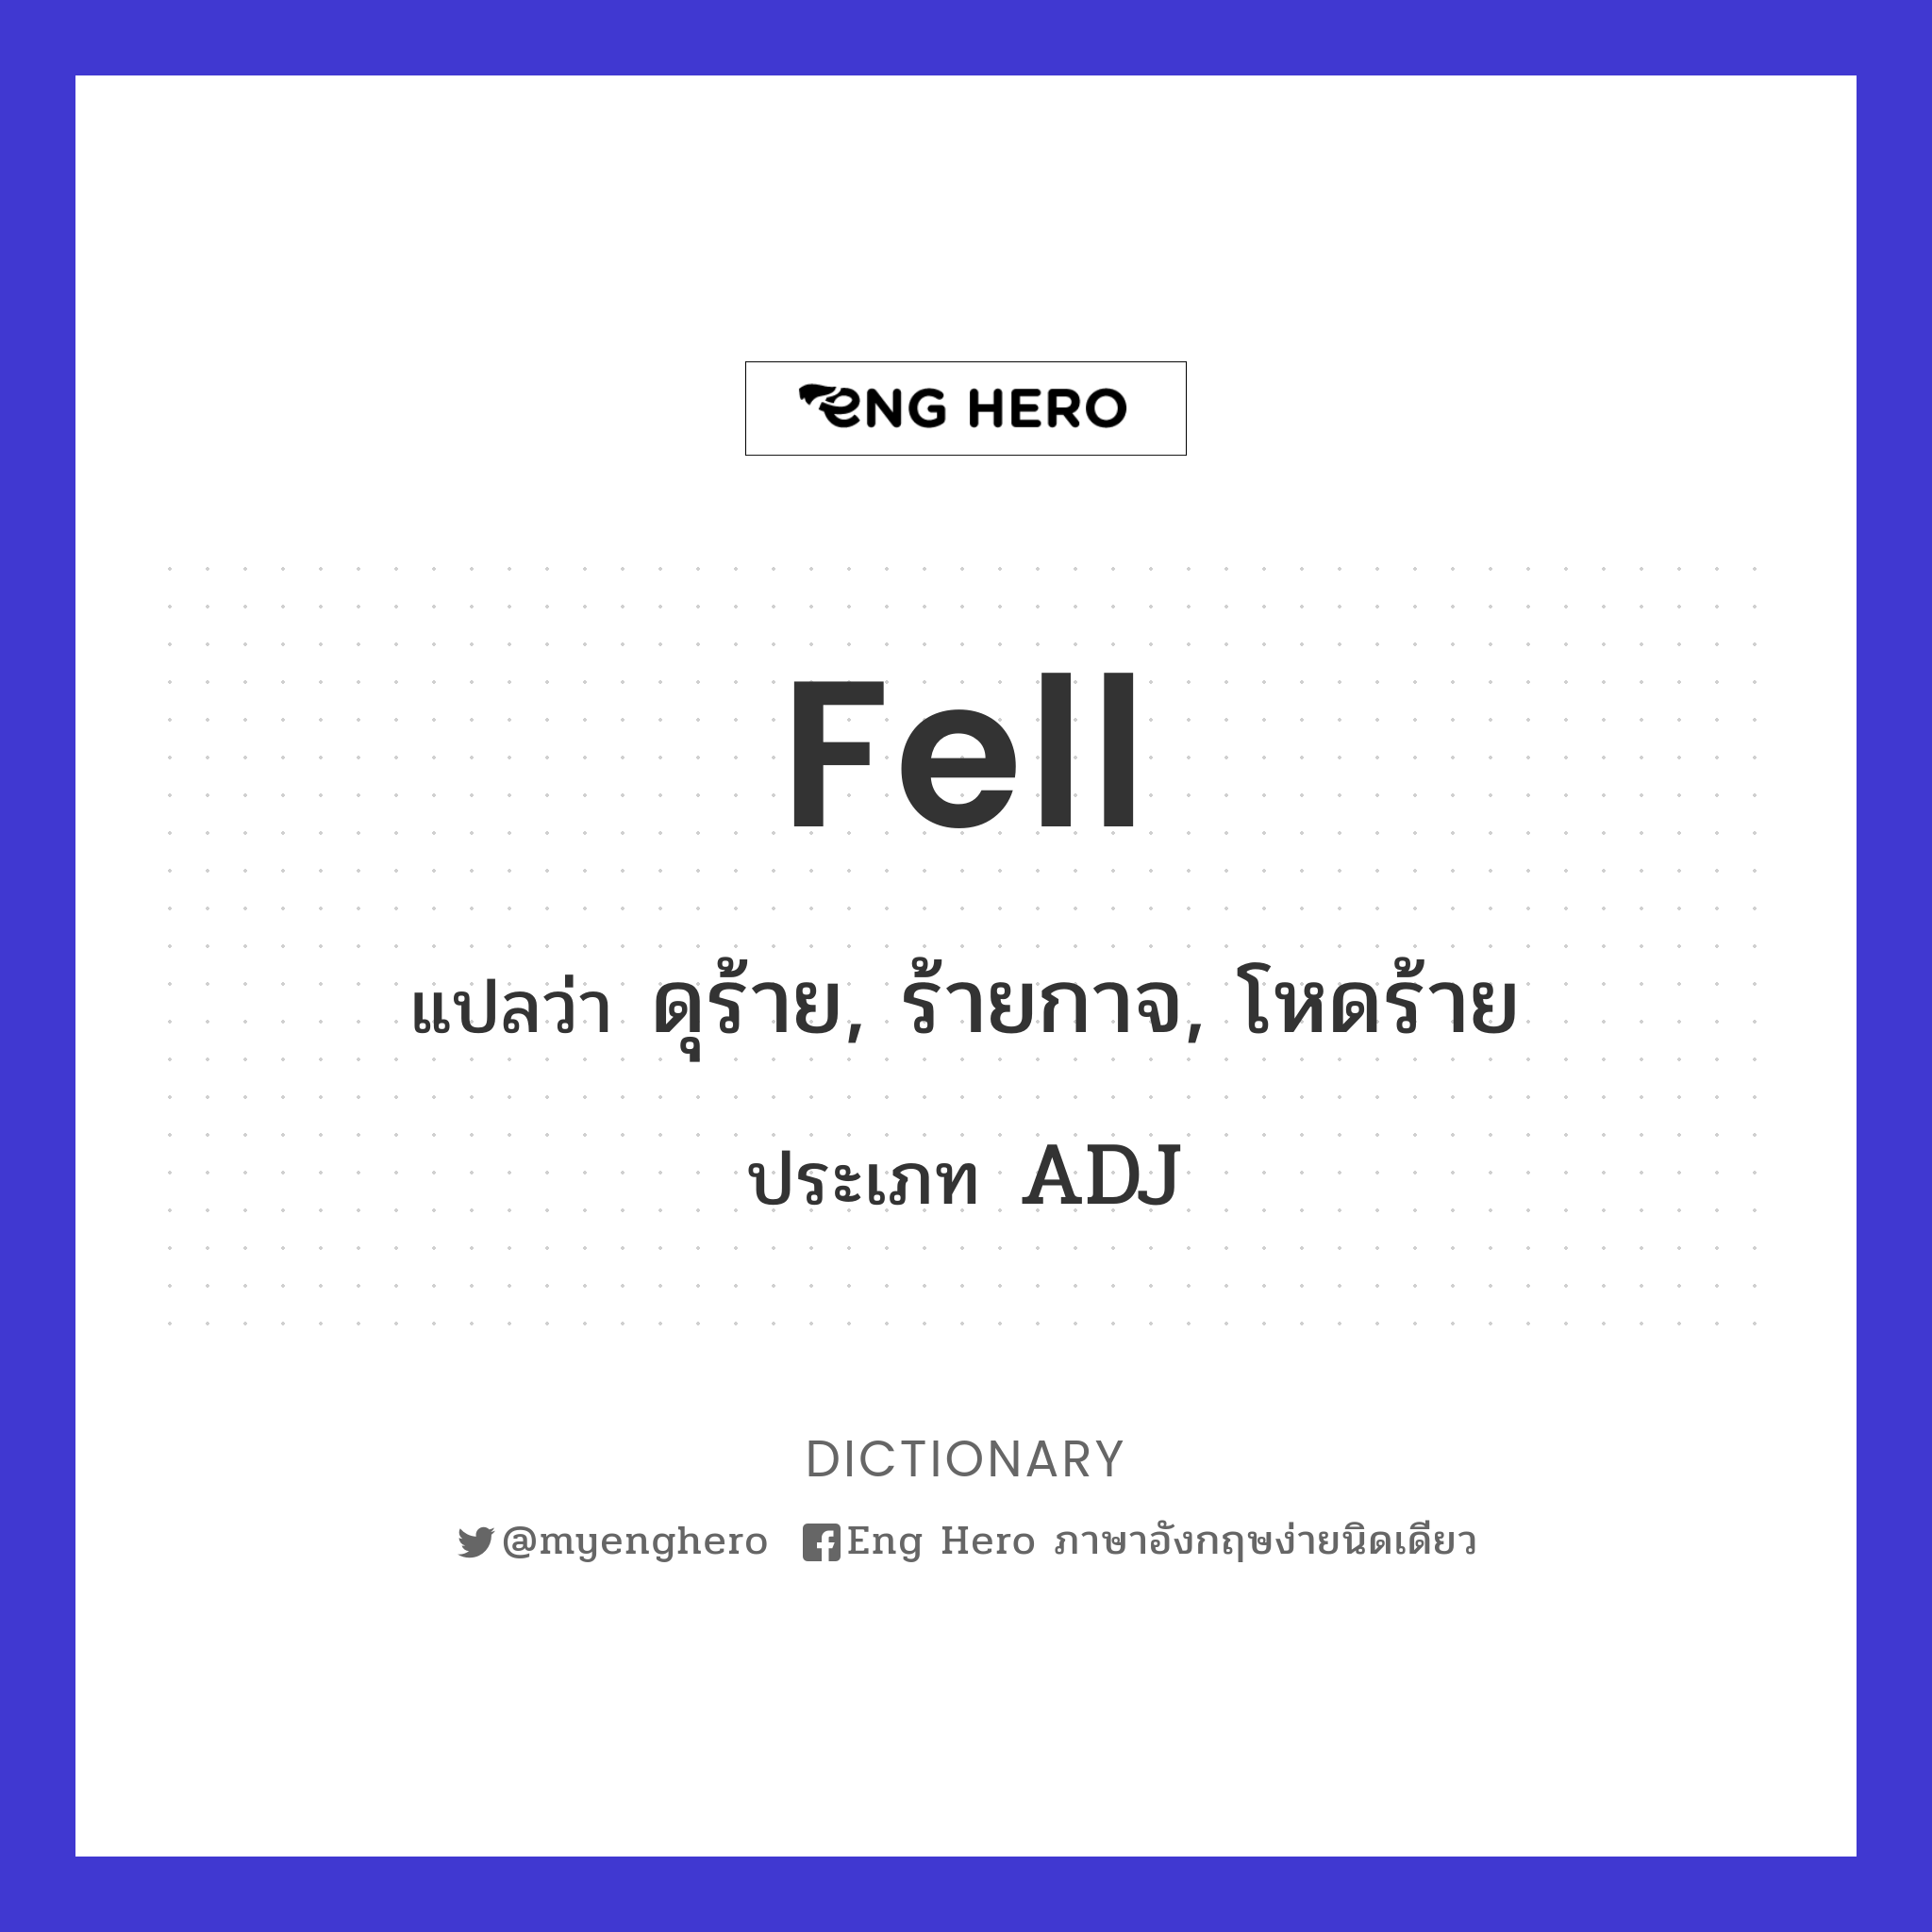 fell